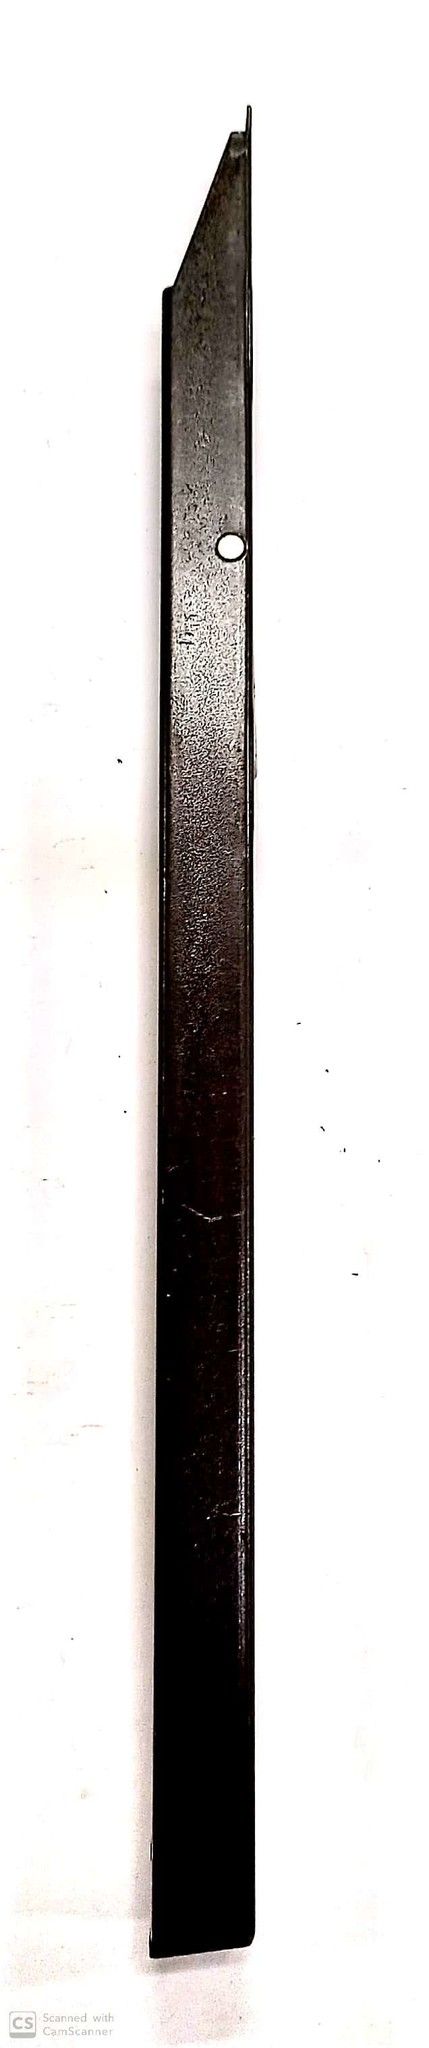 Catenaccio a leva cm 25 in ferro bronzato AGB 320